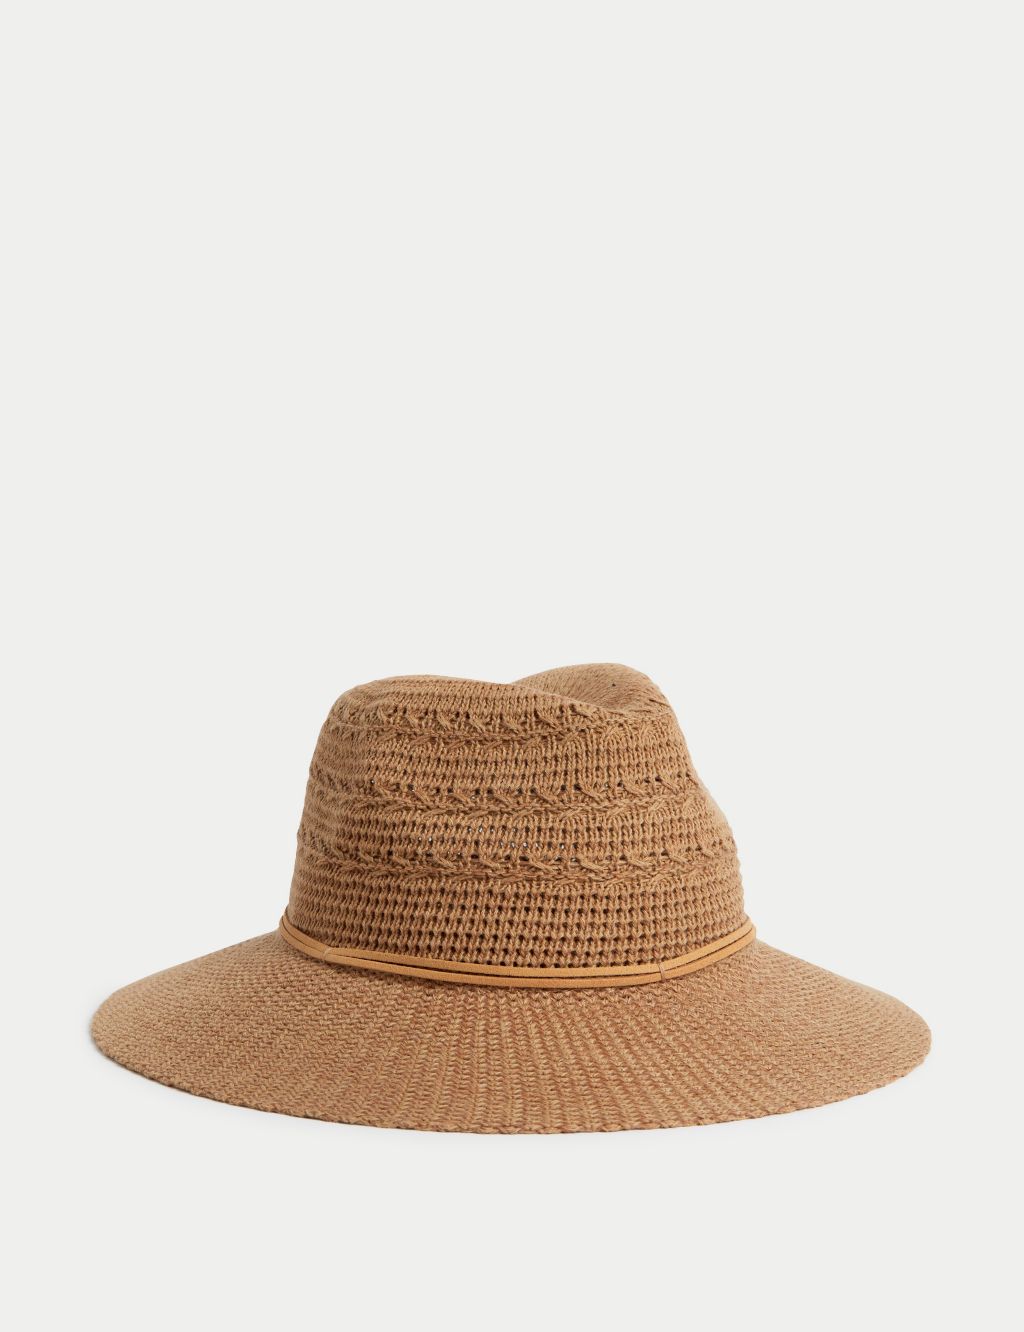 Cotton Rich Packable Fedora Hat image 1